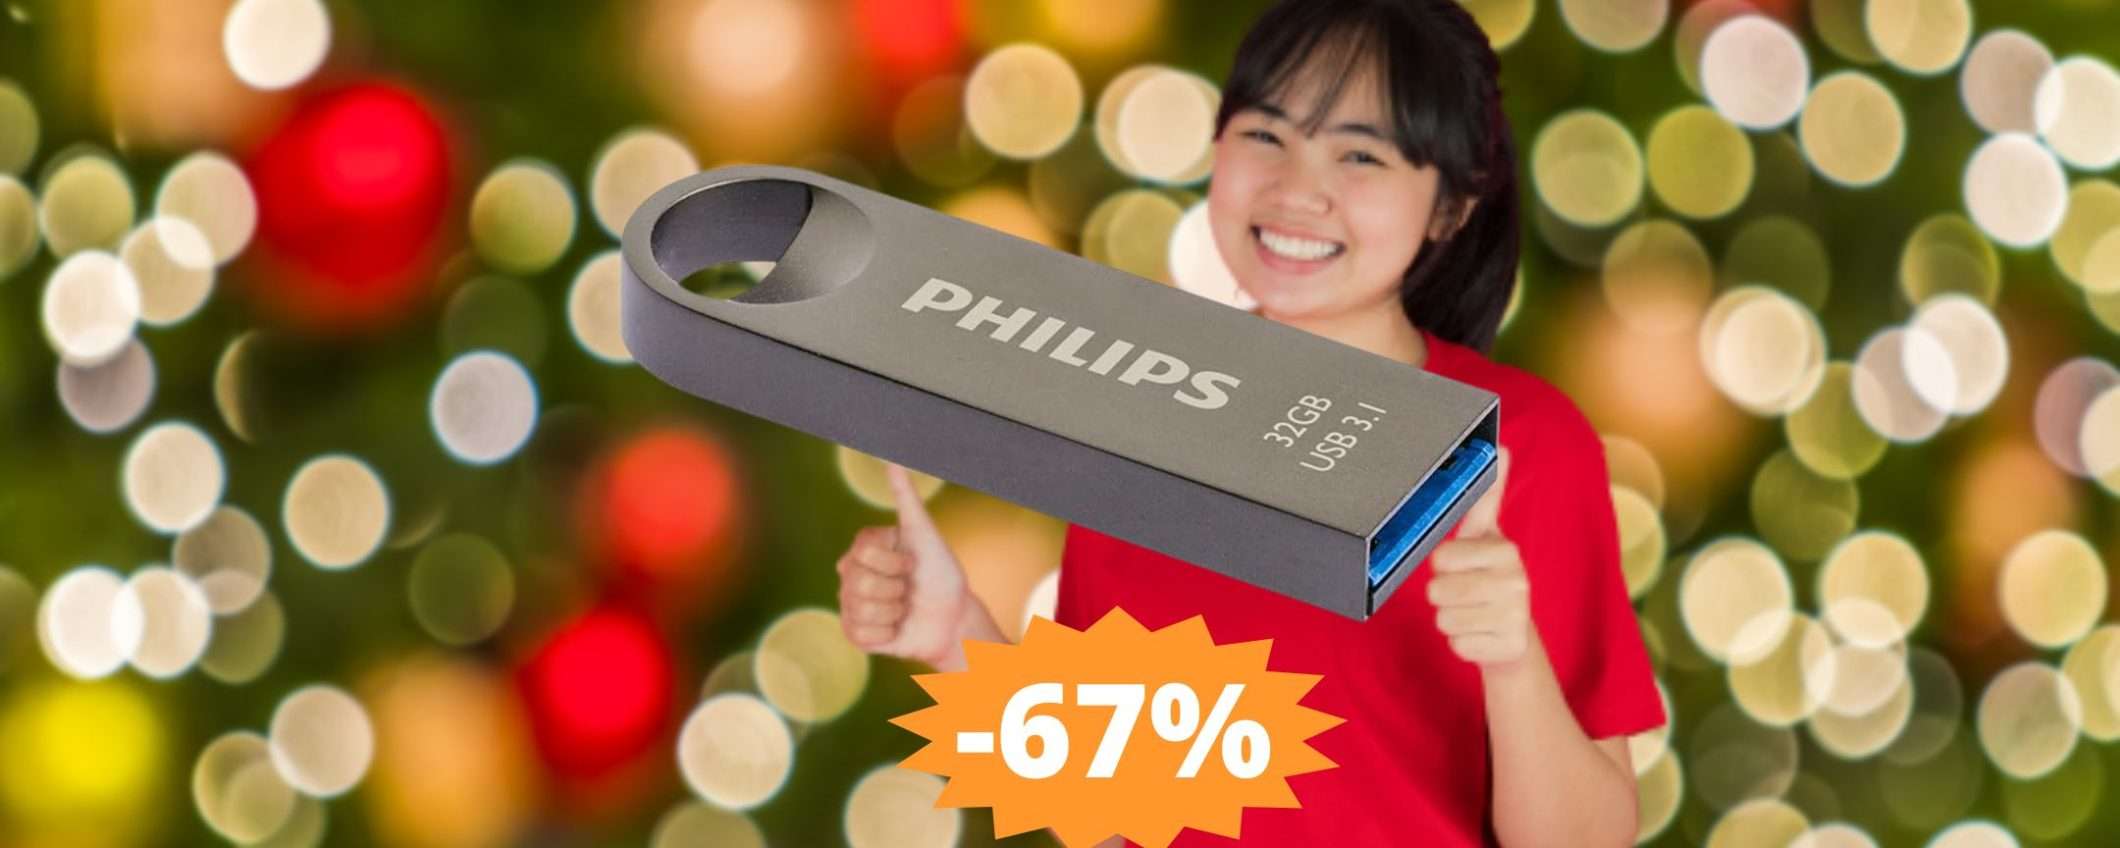 Chiavetta USB Philips Moon: un AFFARE incredibile (-67%)